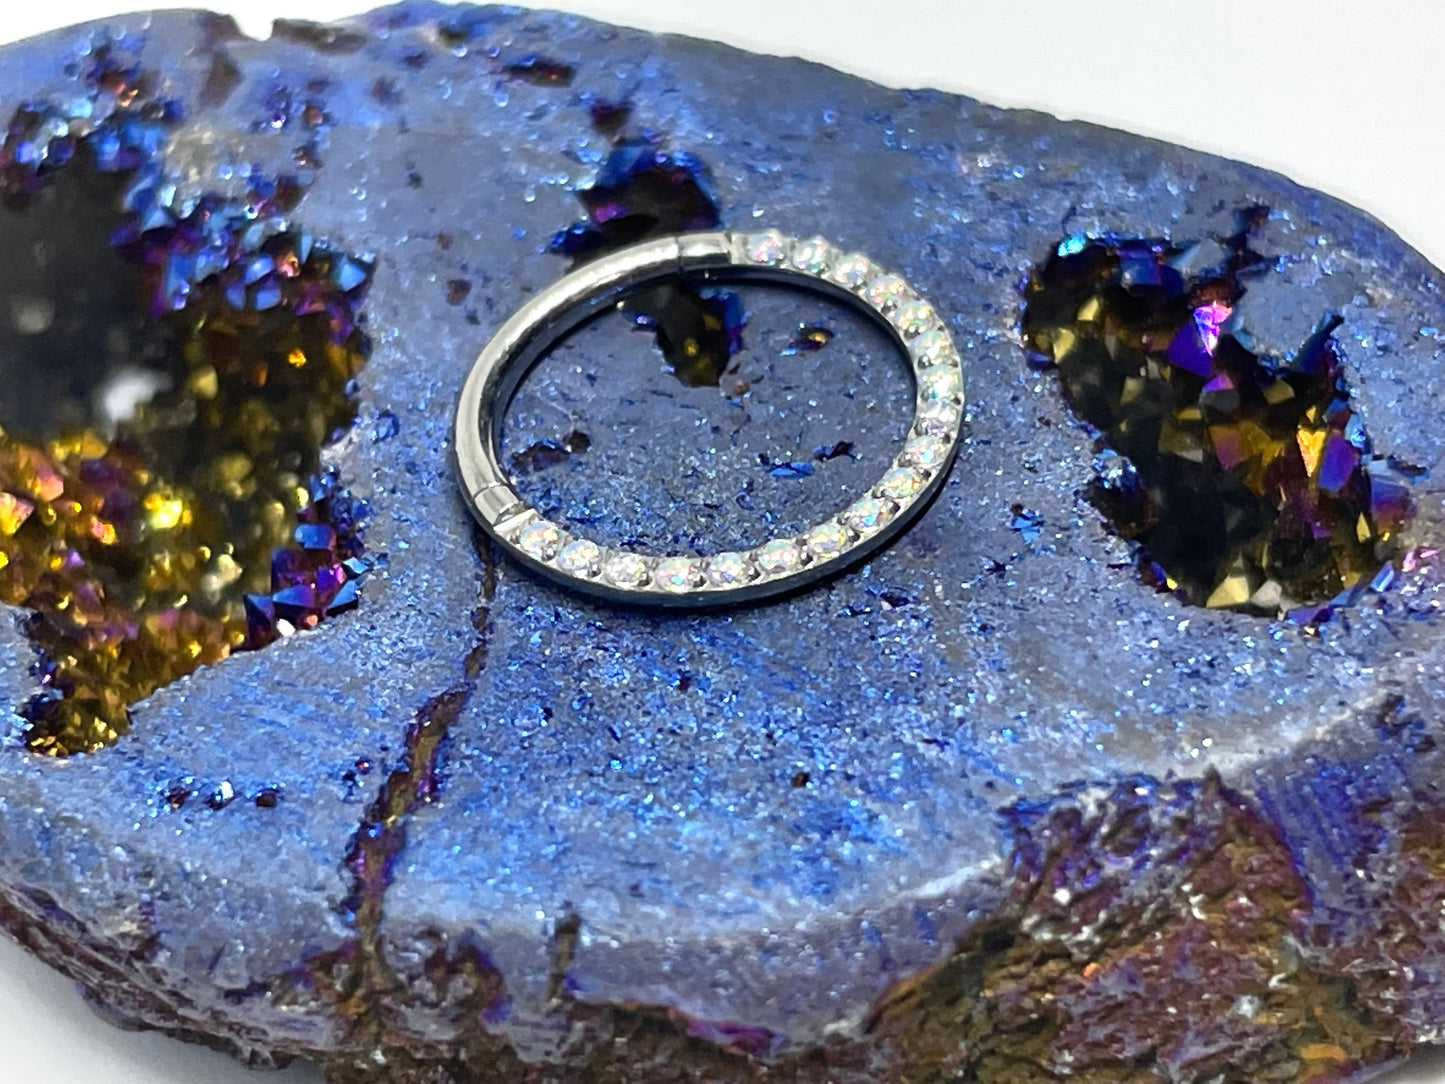 16ga 3/8 titanium ASTM F136 iridescent gem front facing hinged septum ring